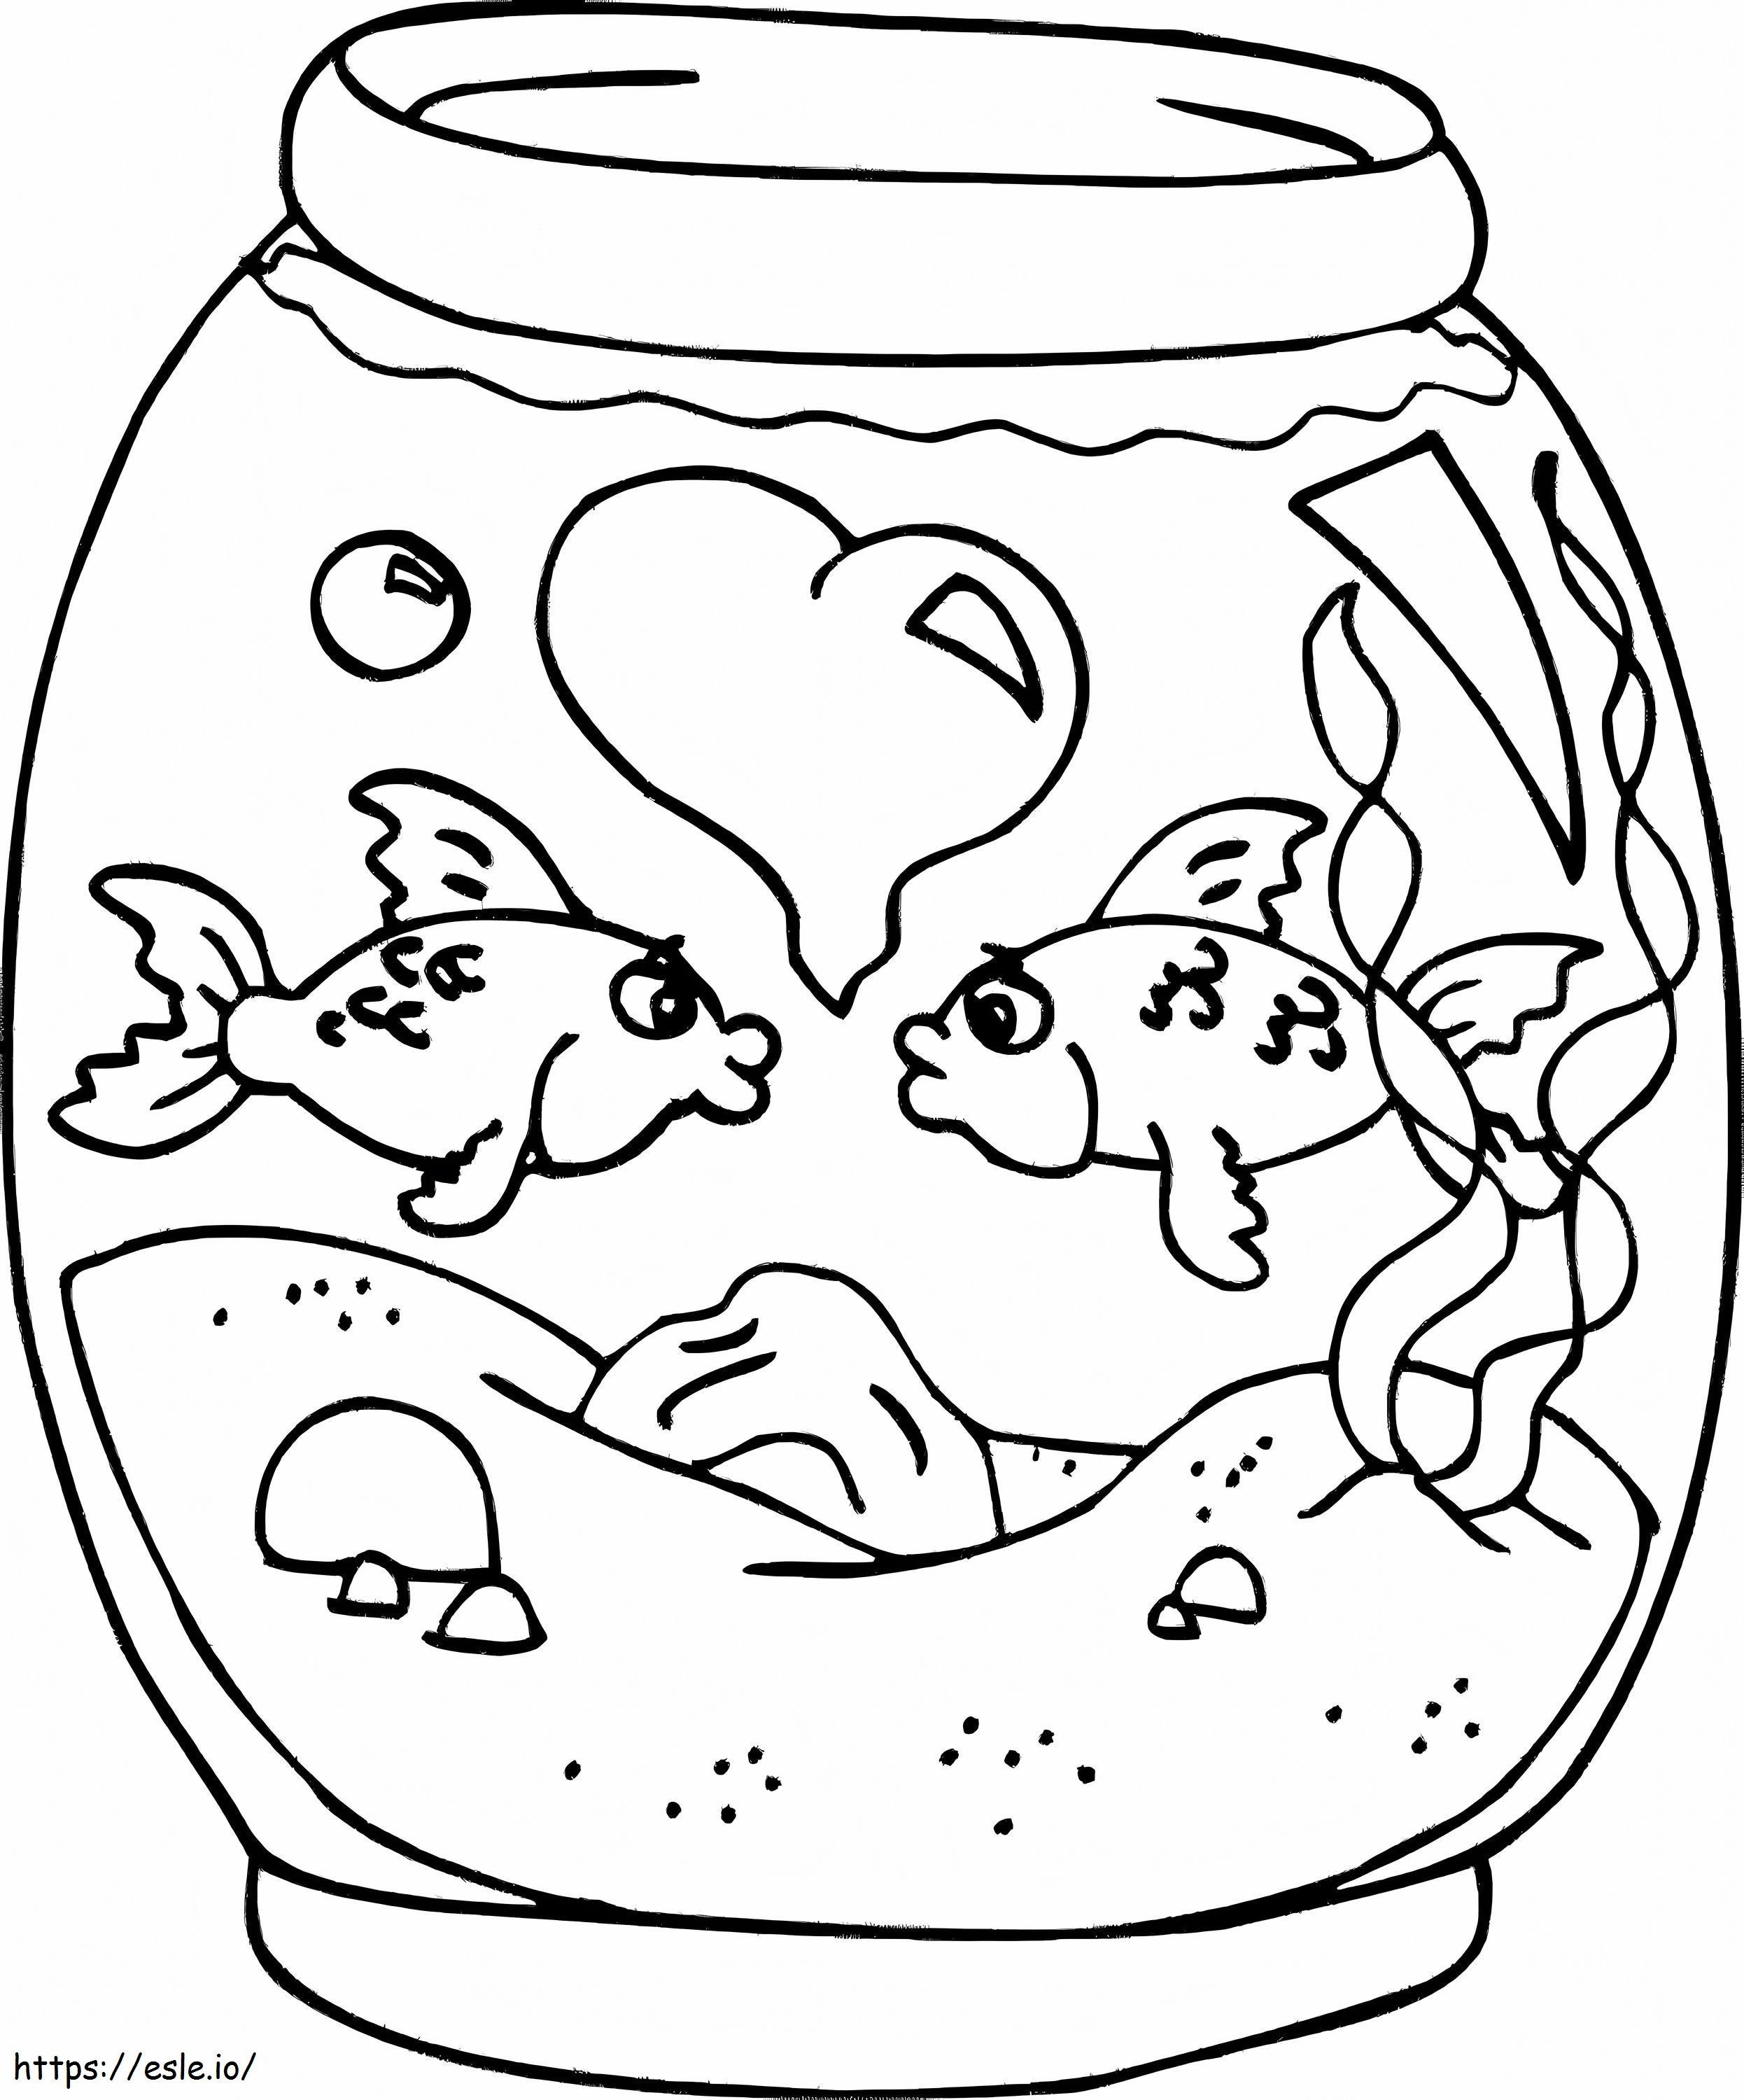 Couple Fish In Aquarium coloring page